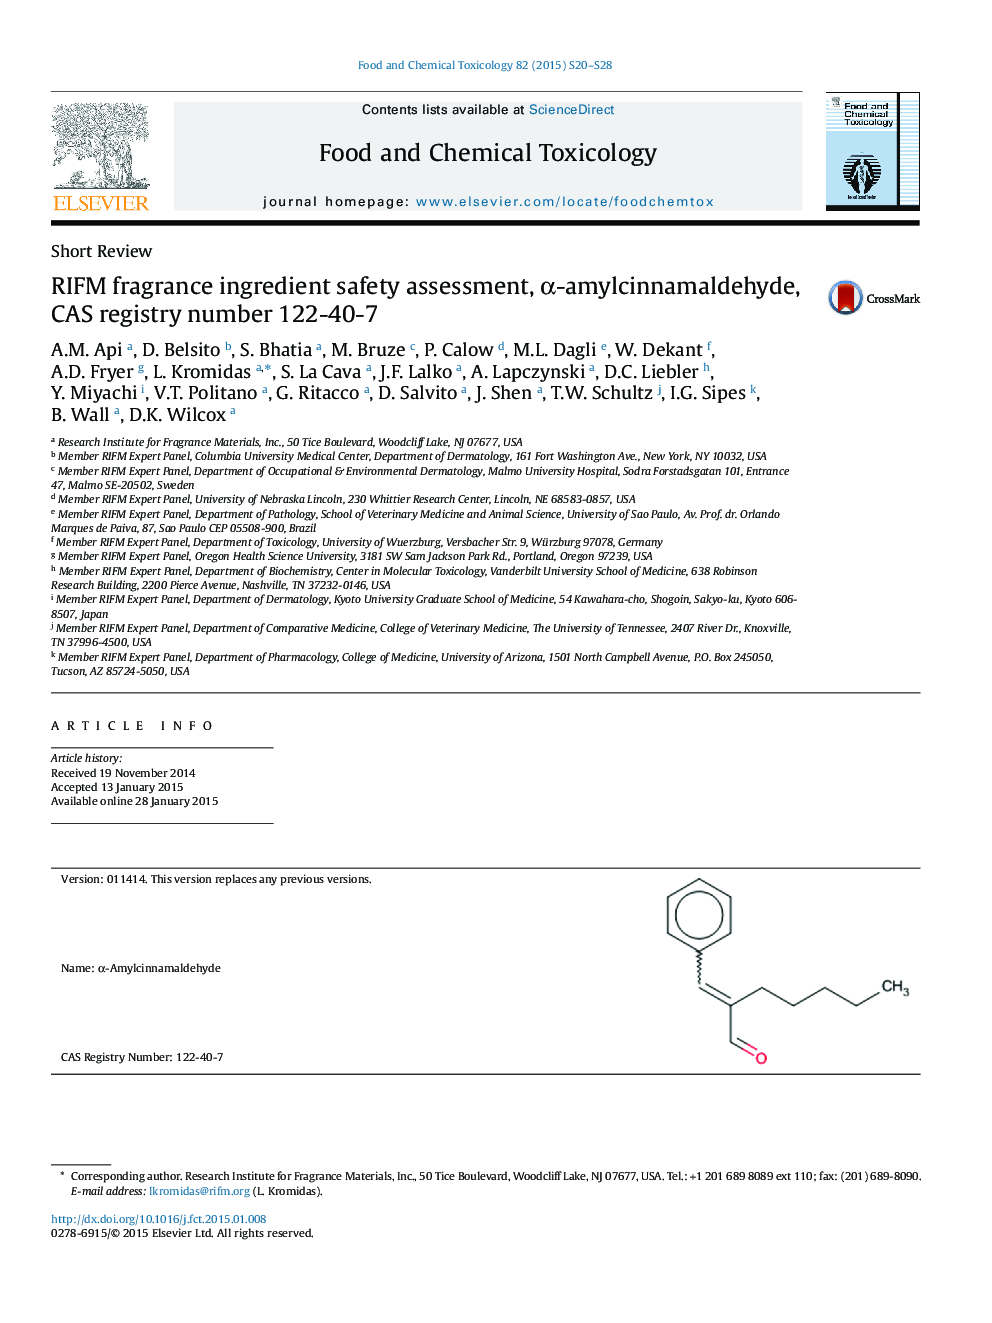 RIFM fragrance ingredient safety assessment, α-amylcinnamaldehyde, CAS registry number 122-40-7